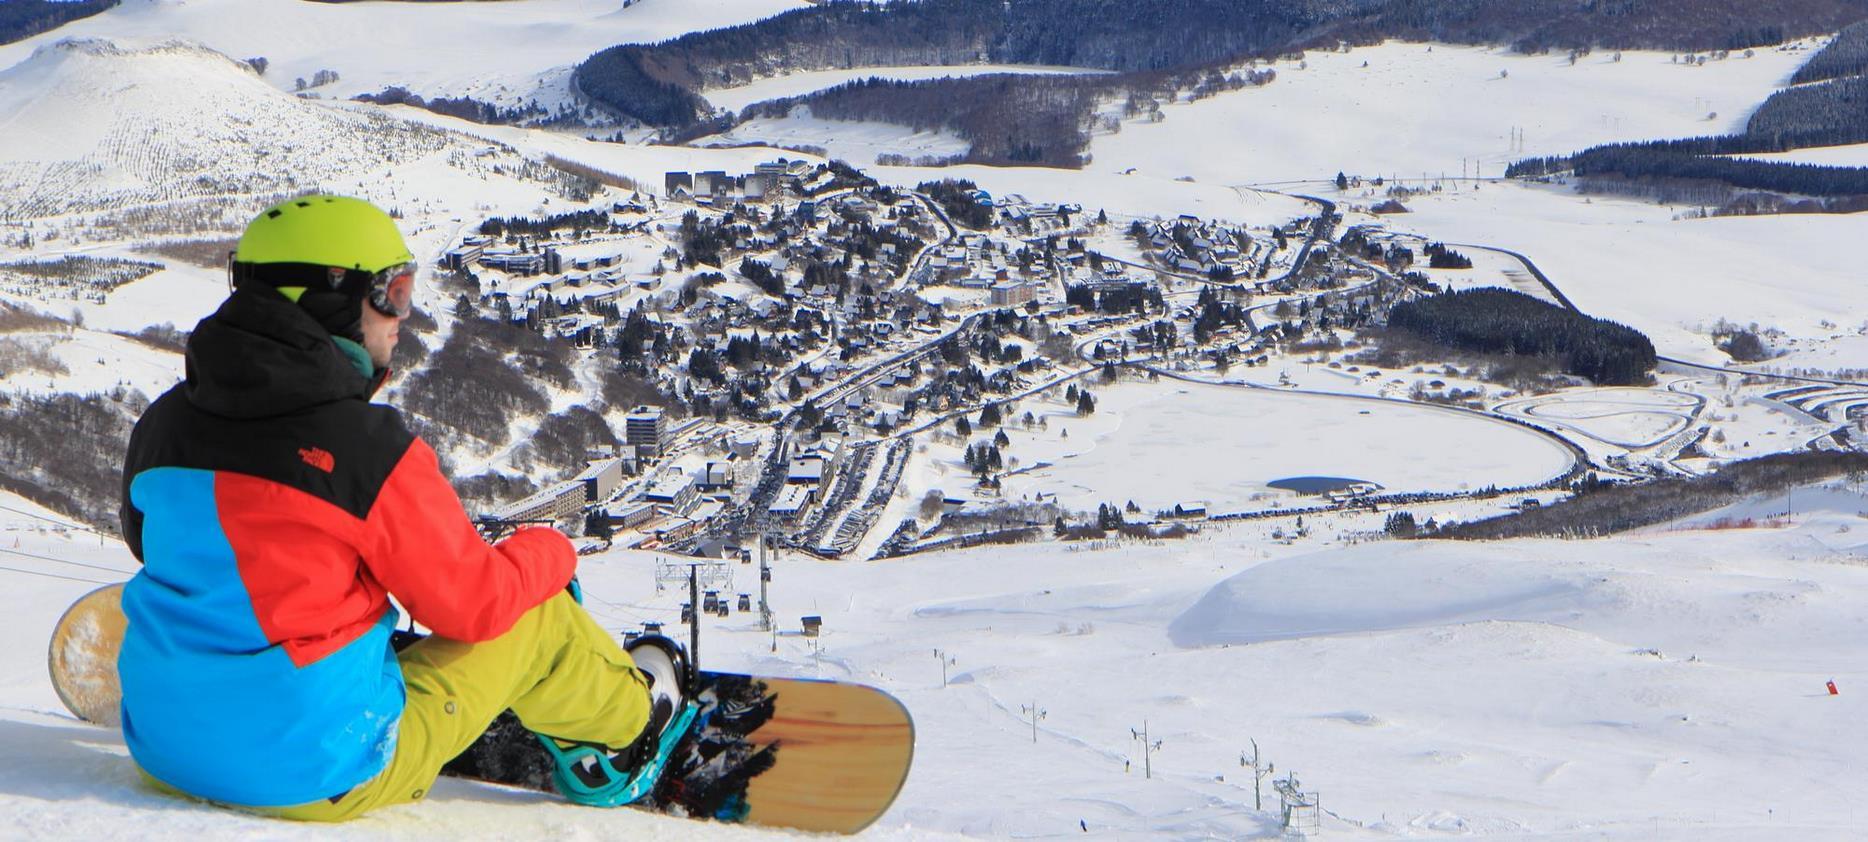 Super Besse - snowboarder on the slopes of super Besse